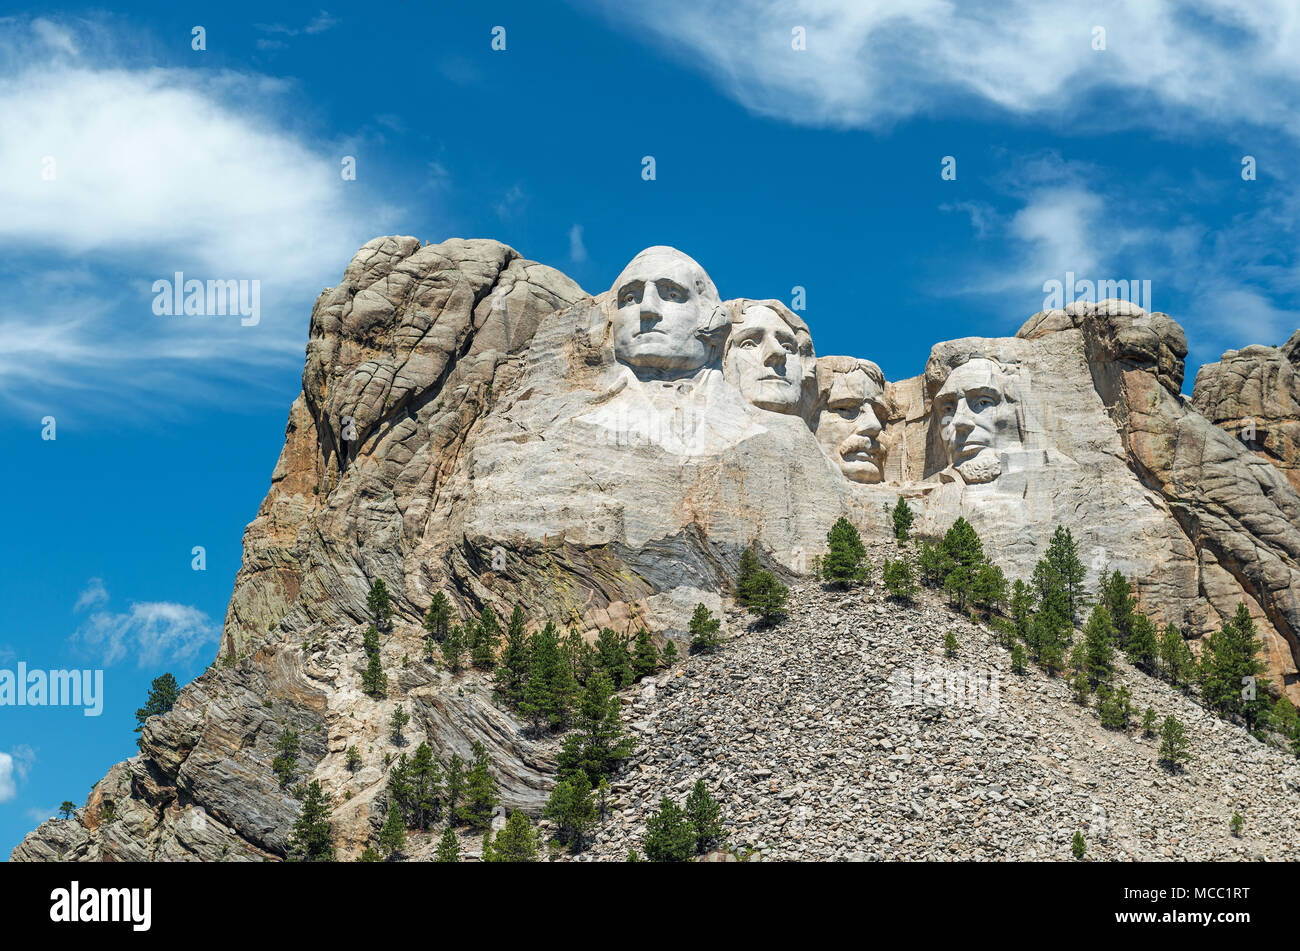 Completare un ampio angolo di visione del monte Rushmore monumento nazionale con la foresta circostante e la natura nei pressi di Rapid City nel South Dakota, Stati Uniti d'America. Foto Stock